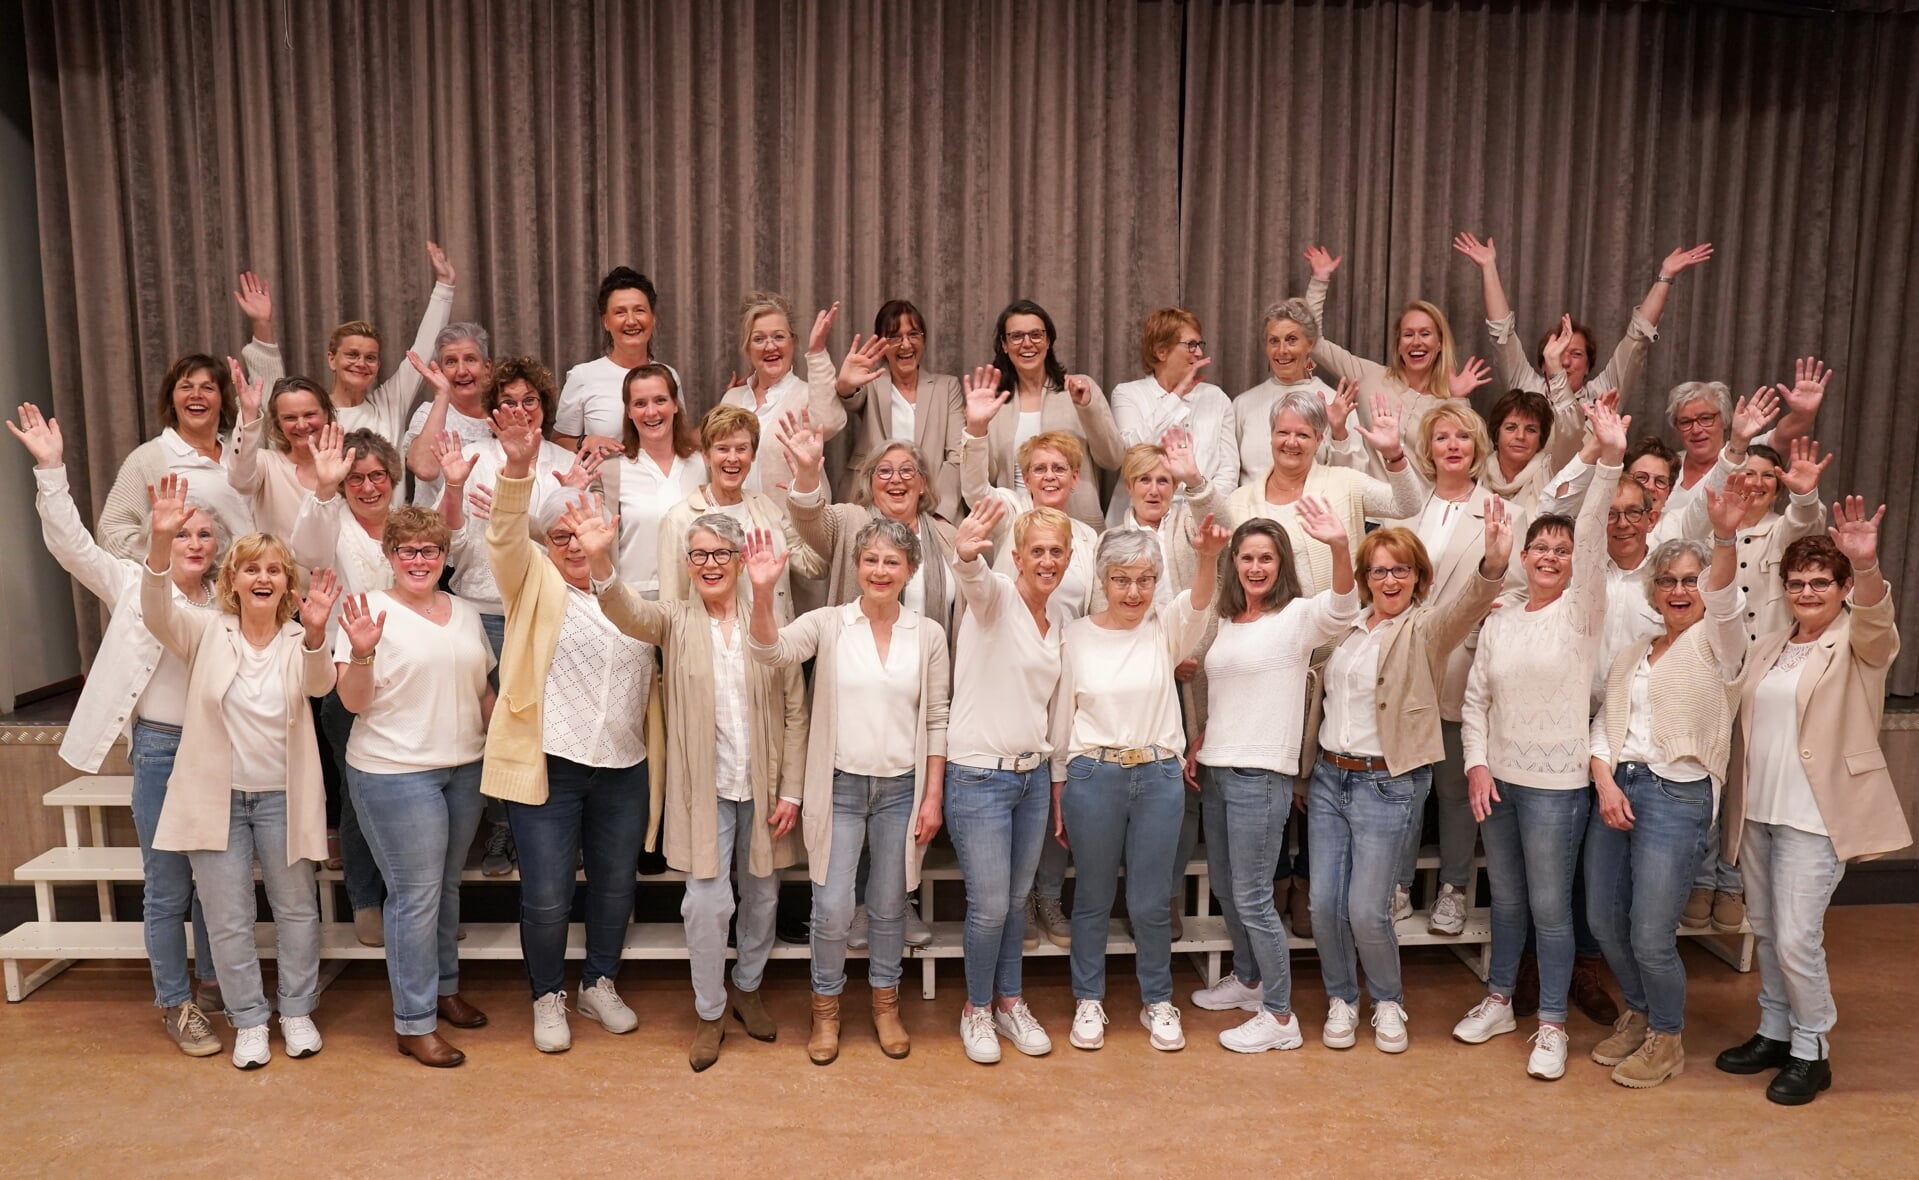 Het Essche koor Innovation bestaat 25 jaar. De leden vieren dat met een groots concert in juli.